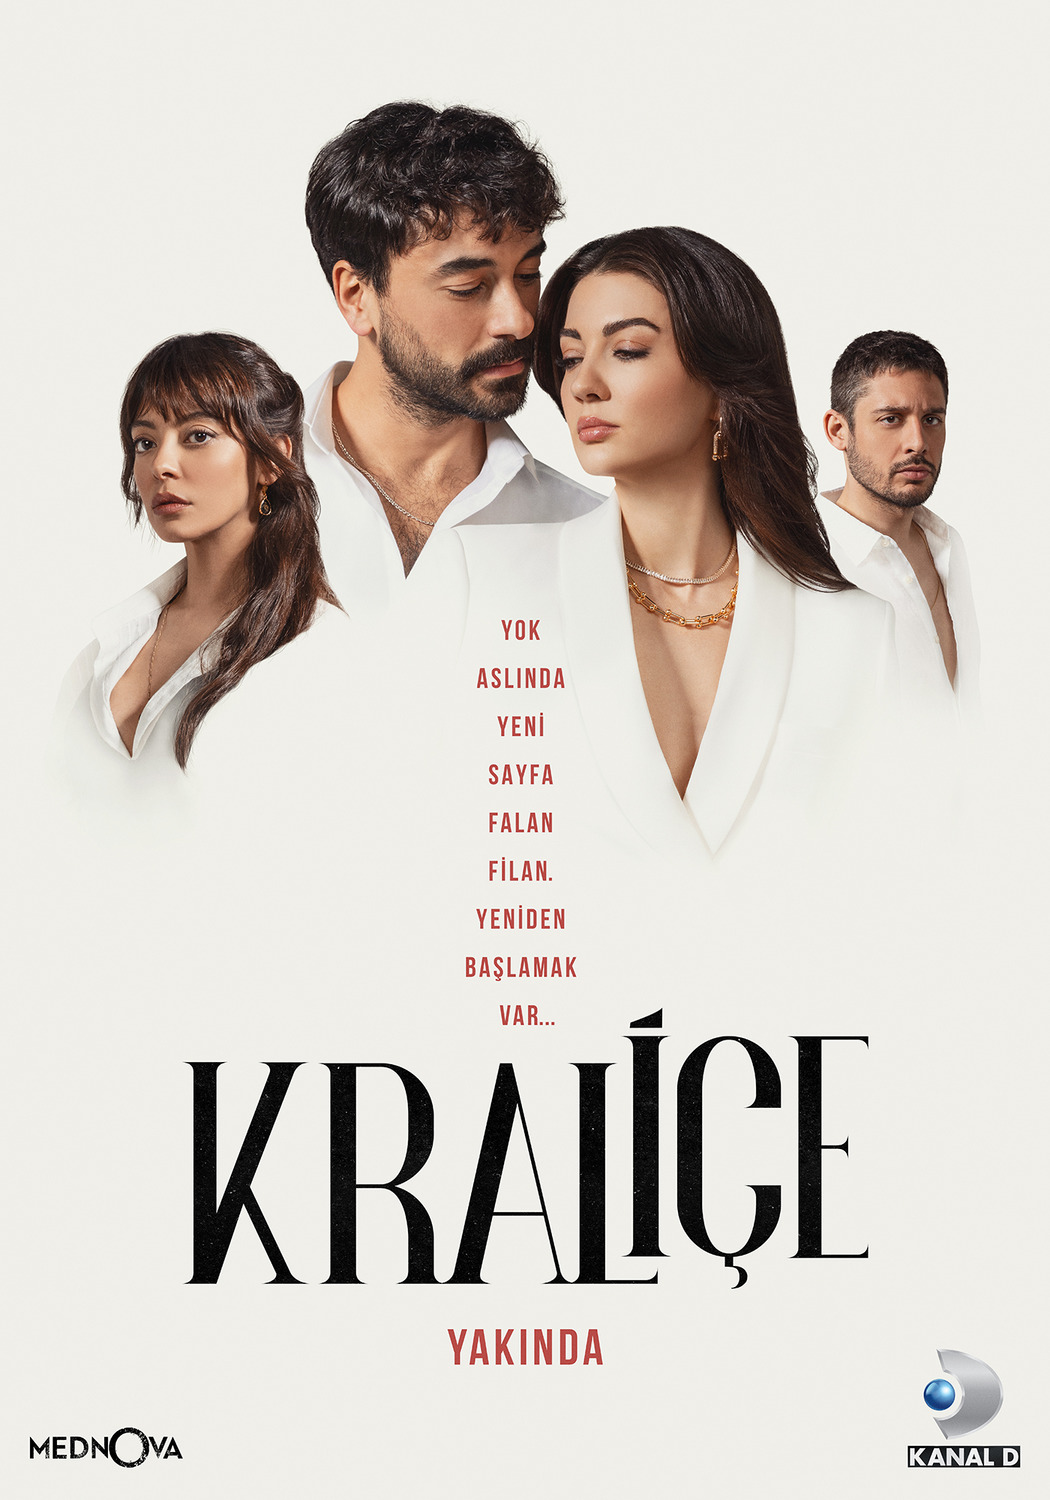 Extra Large TV Poster Image for Kraliçe (#1 of 2)